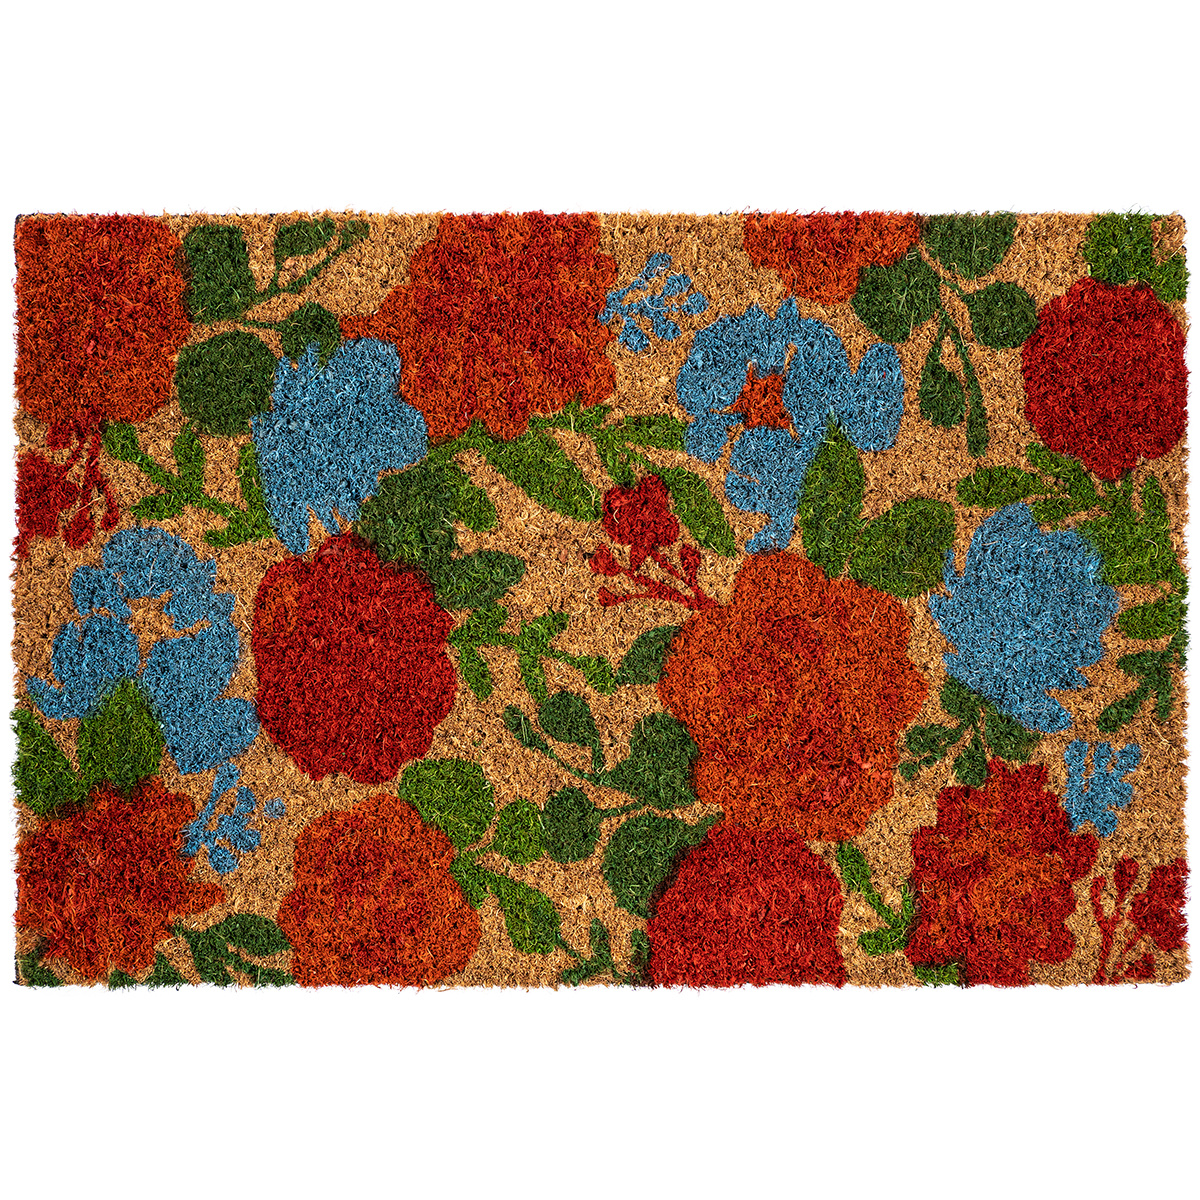 Trade Concept Kokosová rohožka Květiny barevná, 40 x 60 cm